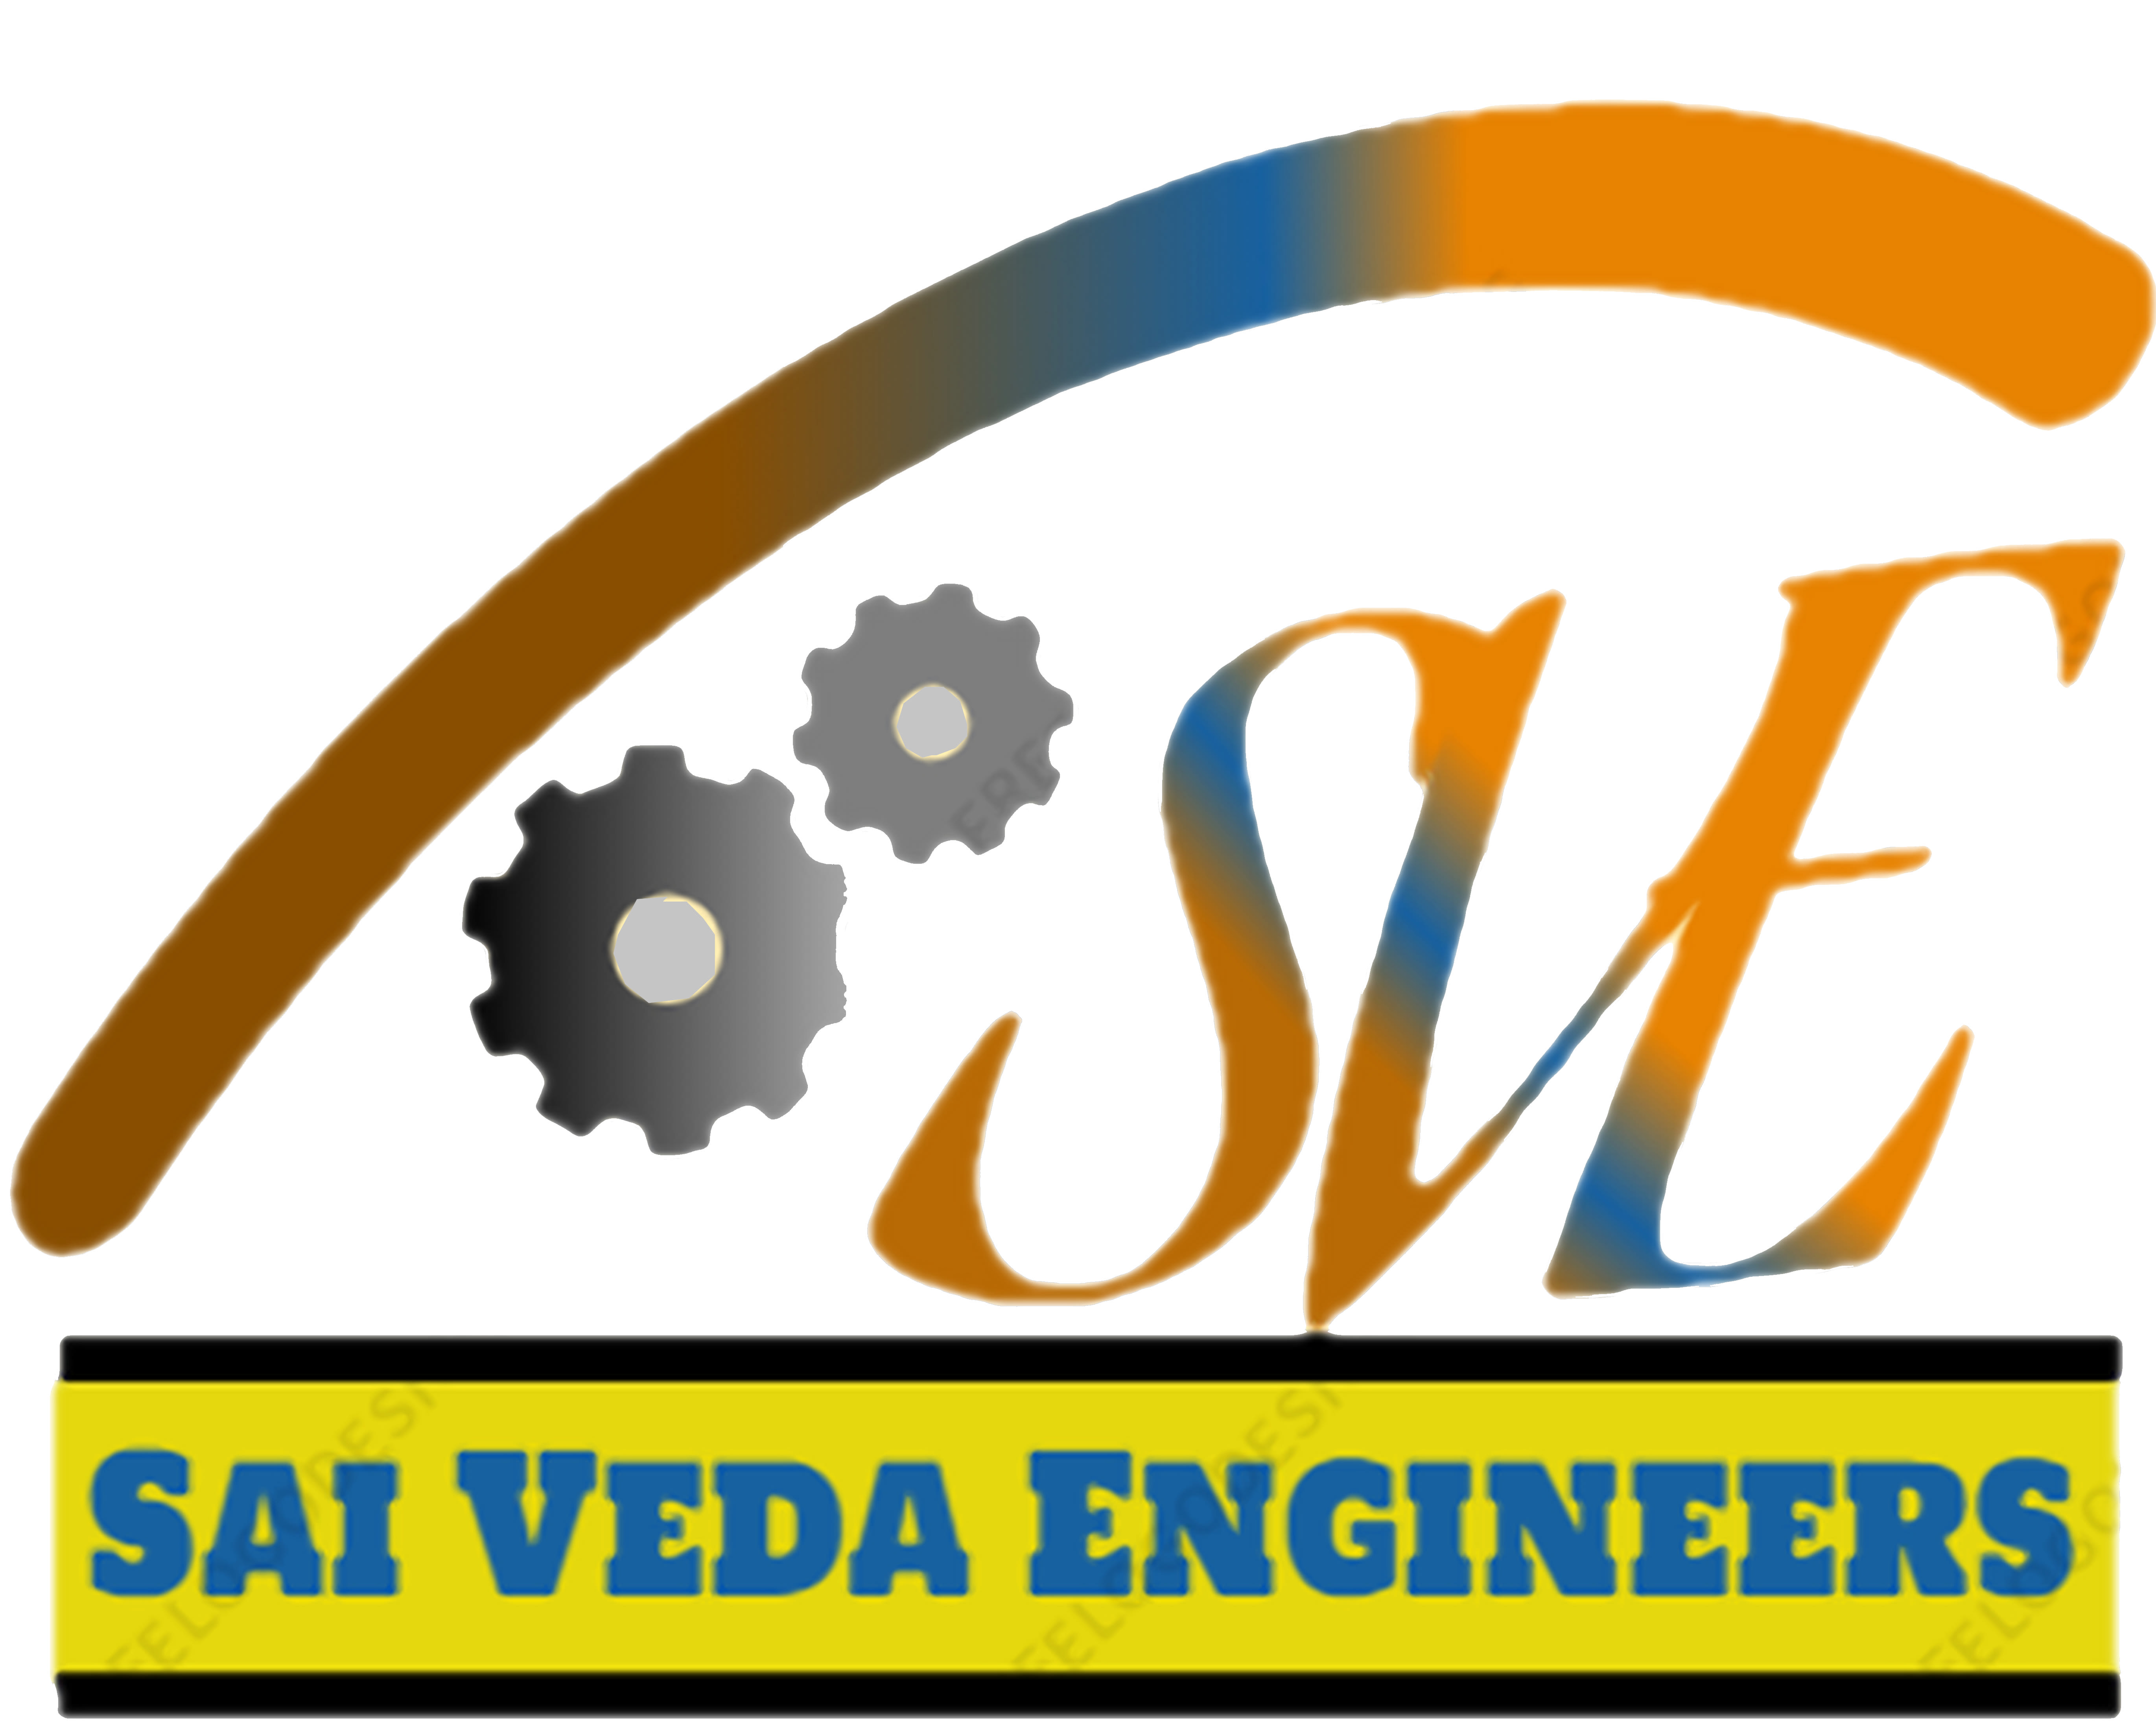 Sai Veda Engineers